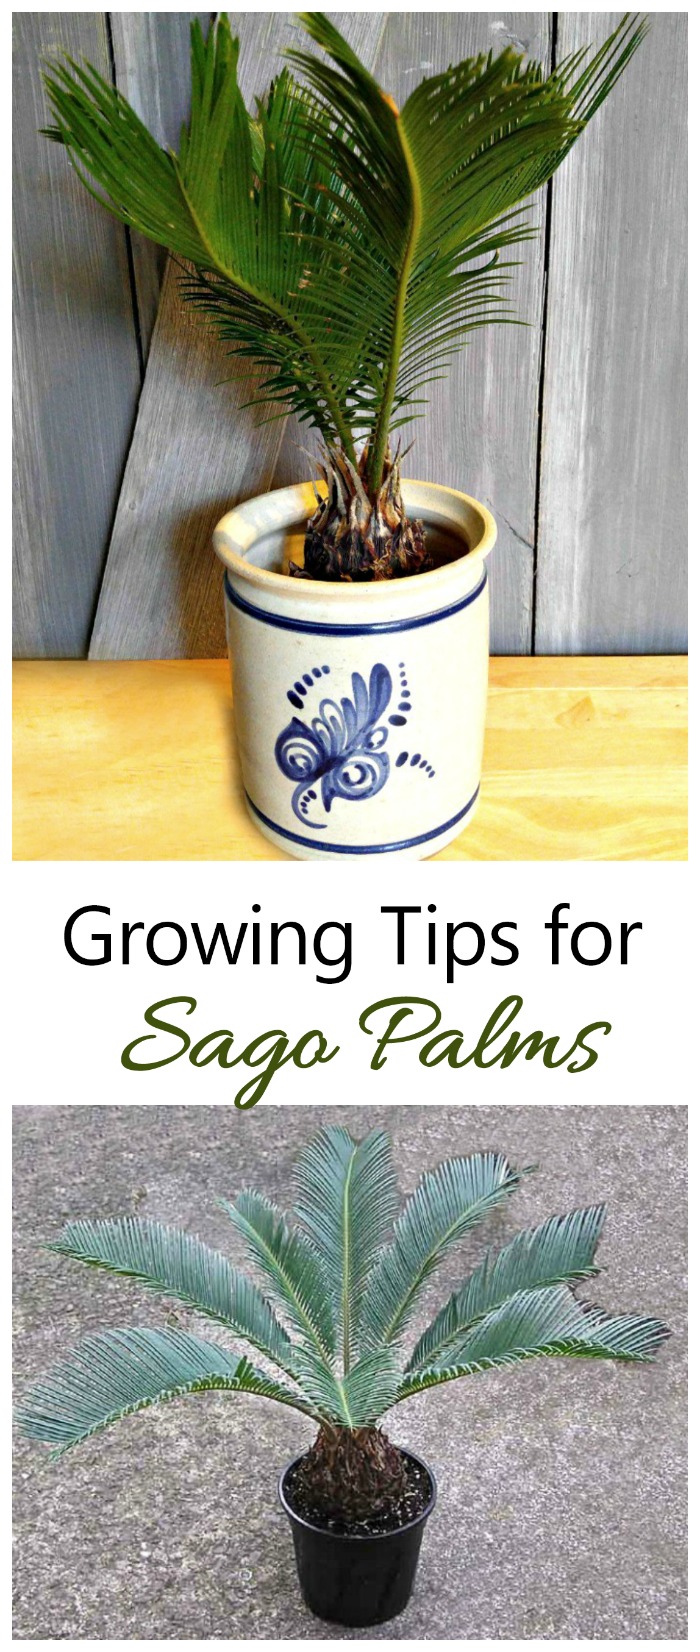 Pěstování palmy Sago - Jak pěstovat palmu Sago?